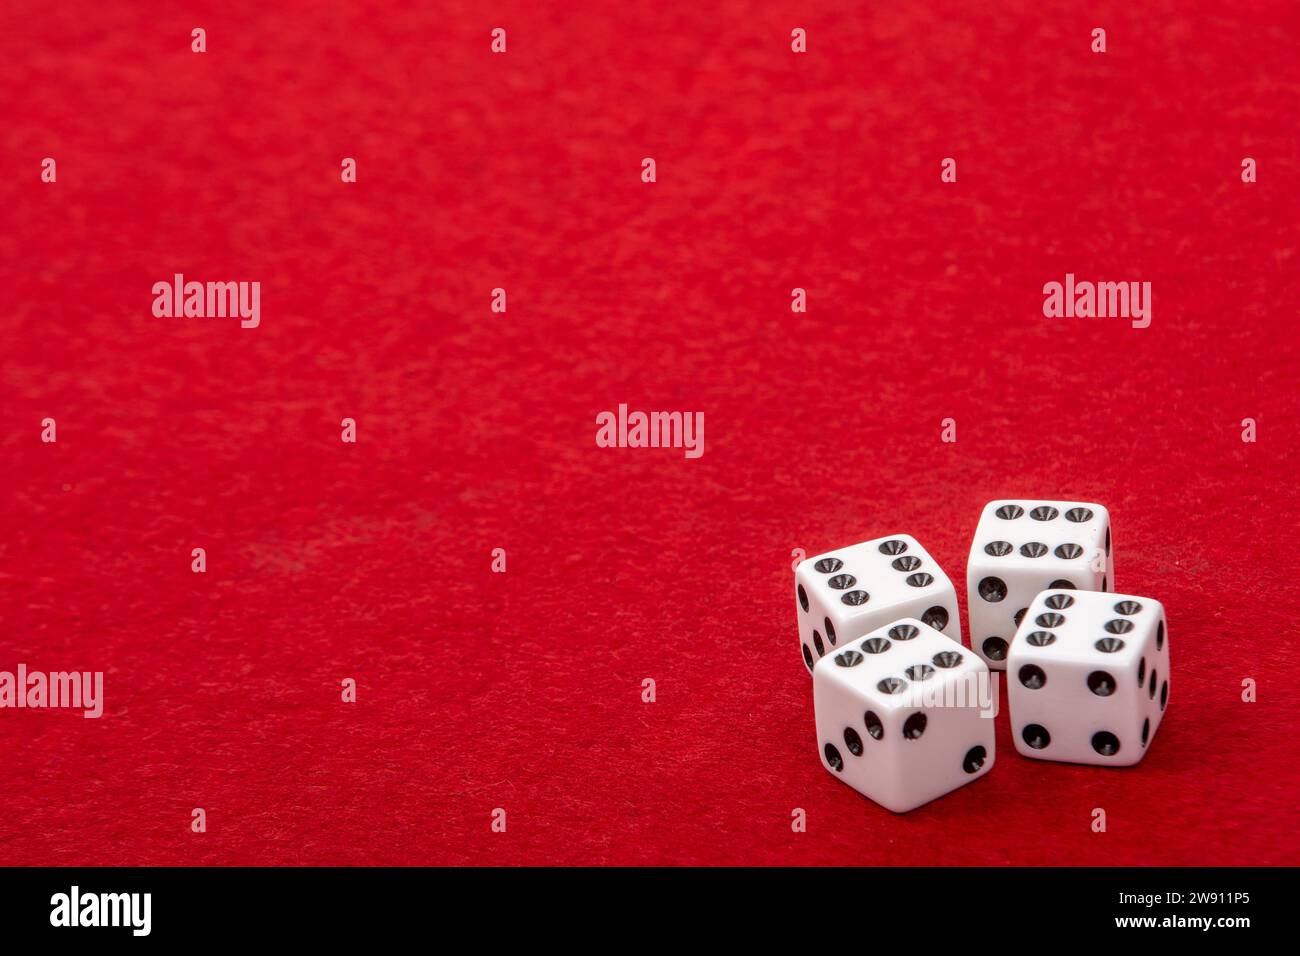 Vier weiße Würfel mit Wert 6 auf dem Spieltisch aus rotem Samt - Glücksspiel und Spielkonzept für Glücksspiele Stockfoto